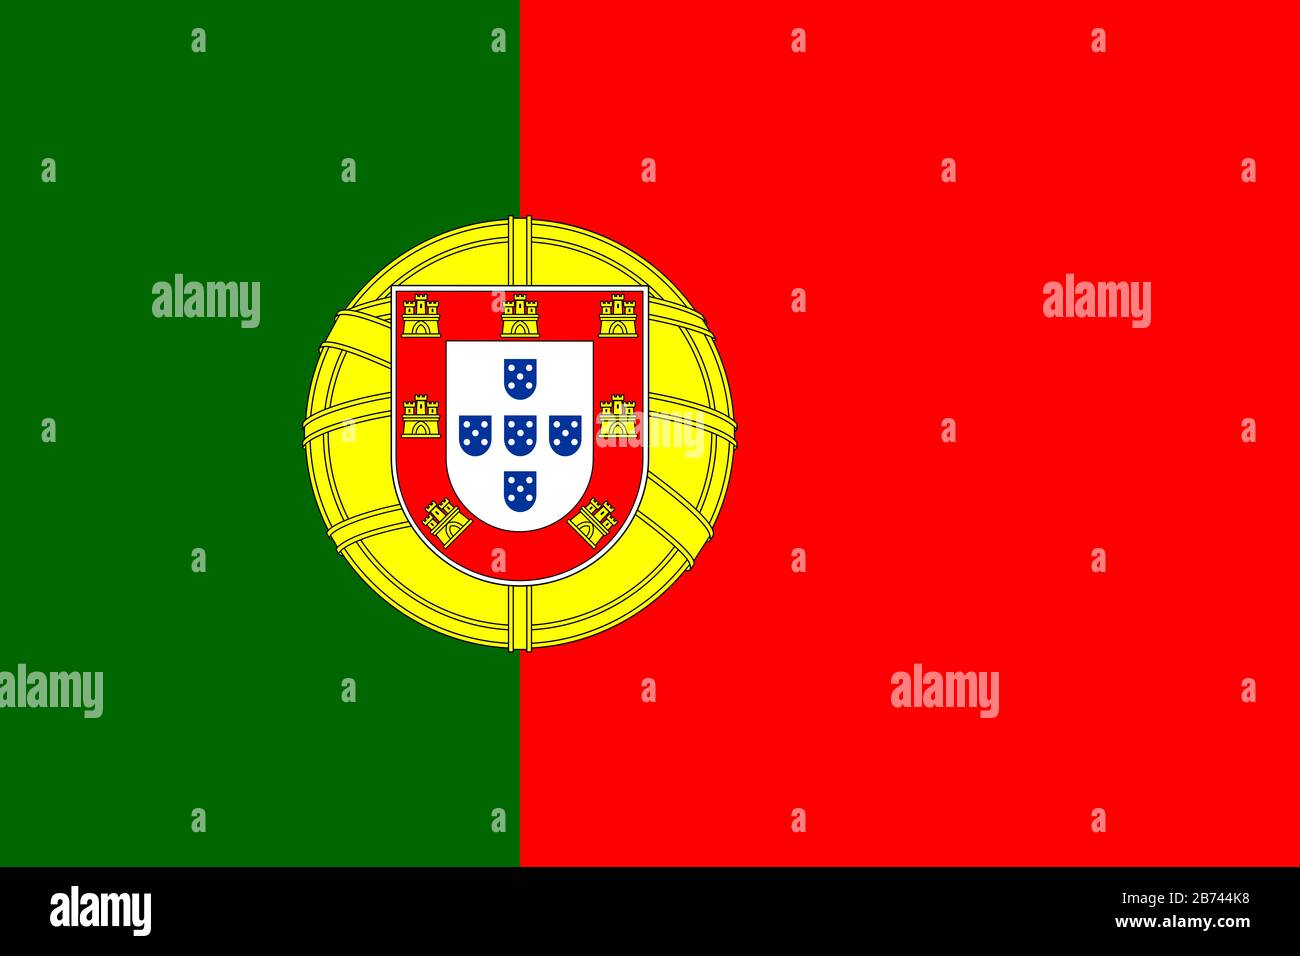 Flagge Portugals - Standardverhältnis der portugiesischen Flagge - True RGB-Farbmodus Stockfoto